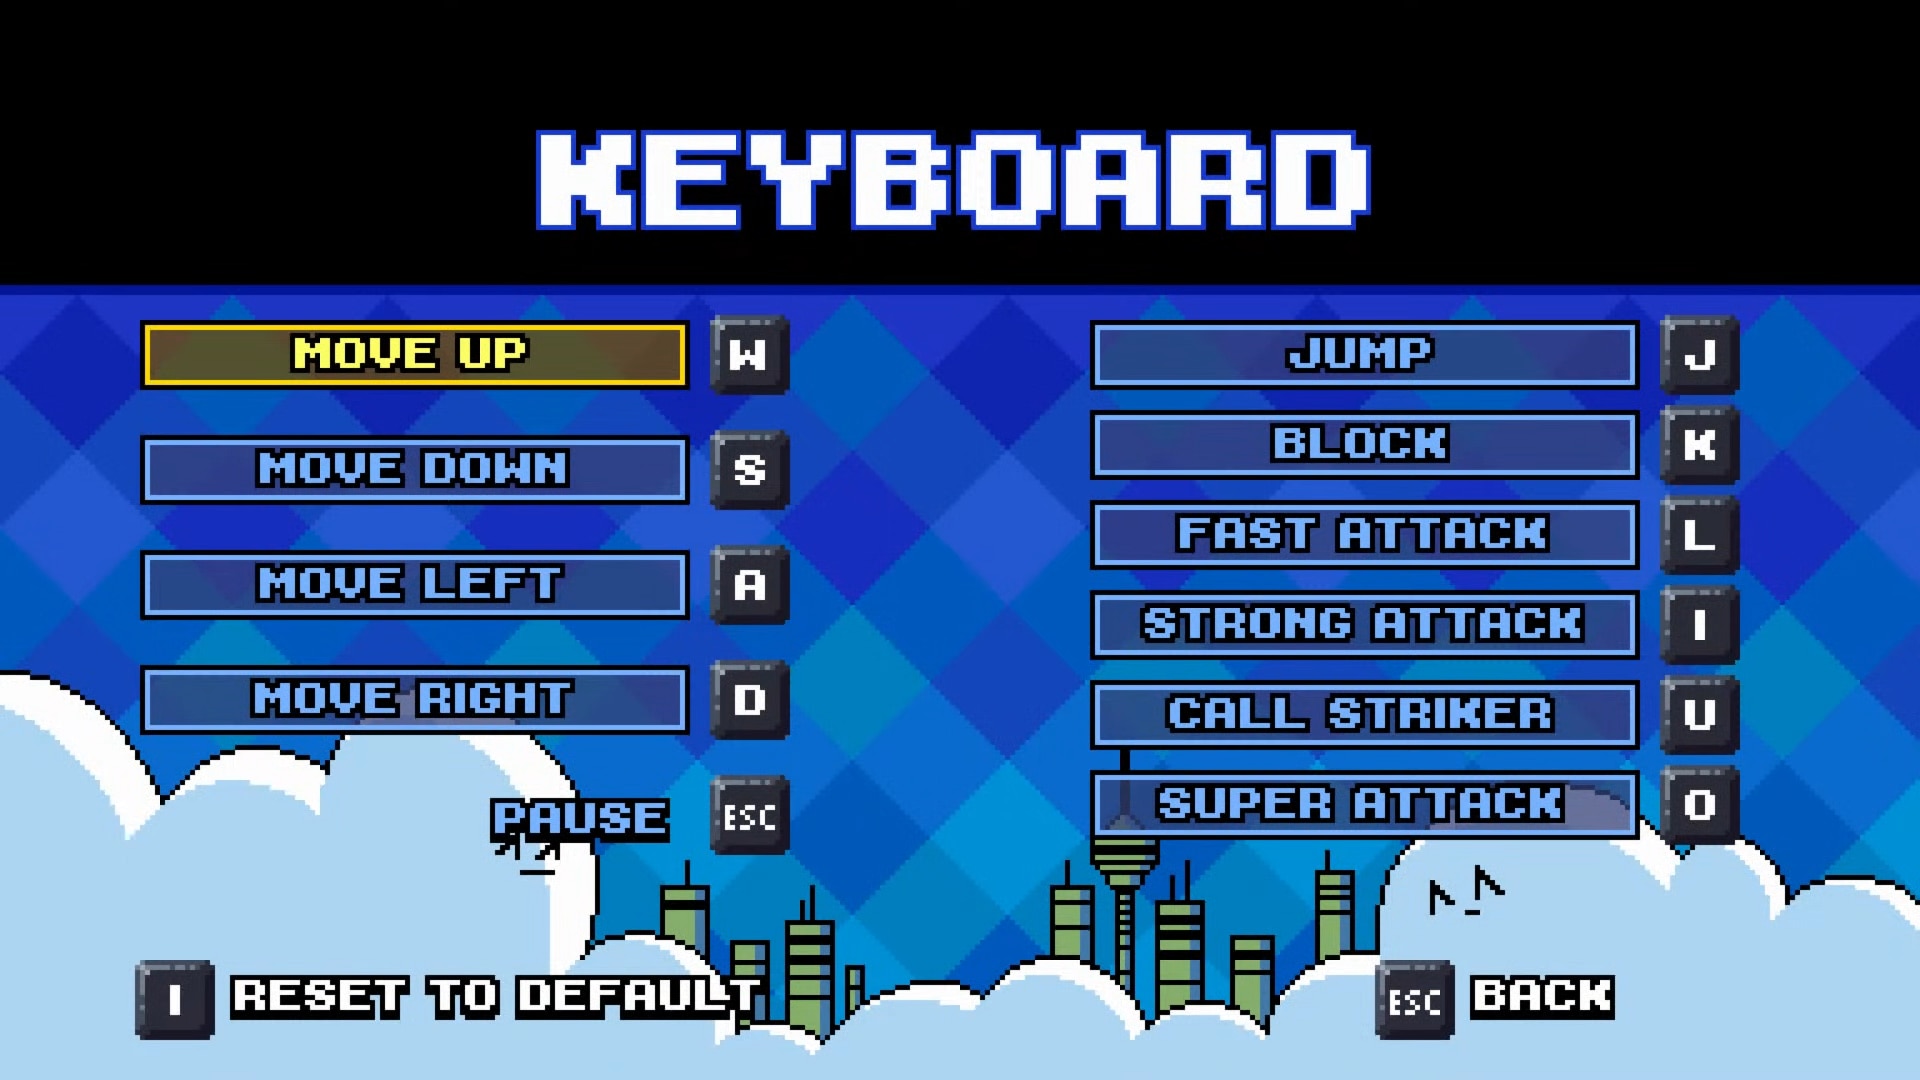 gylt keyboard controls